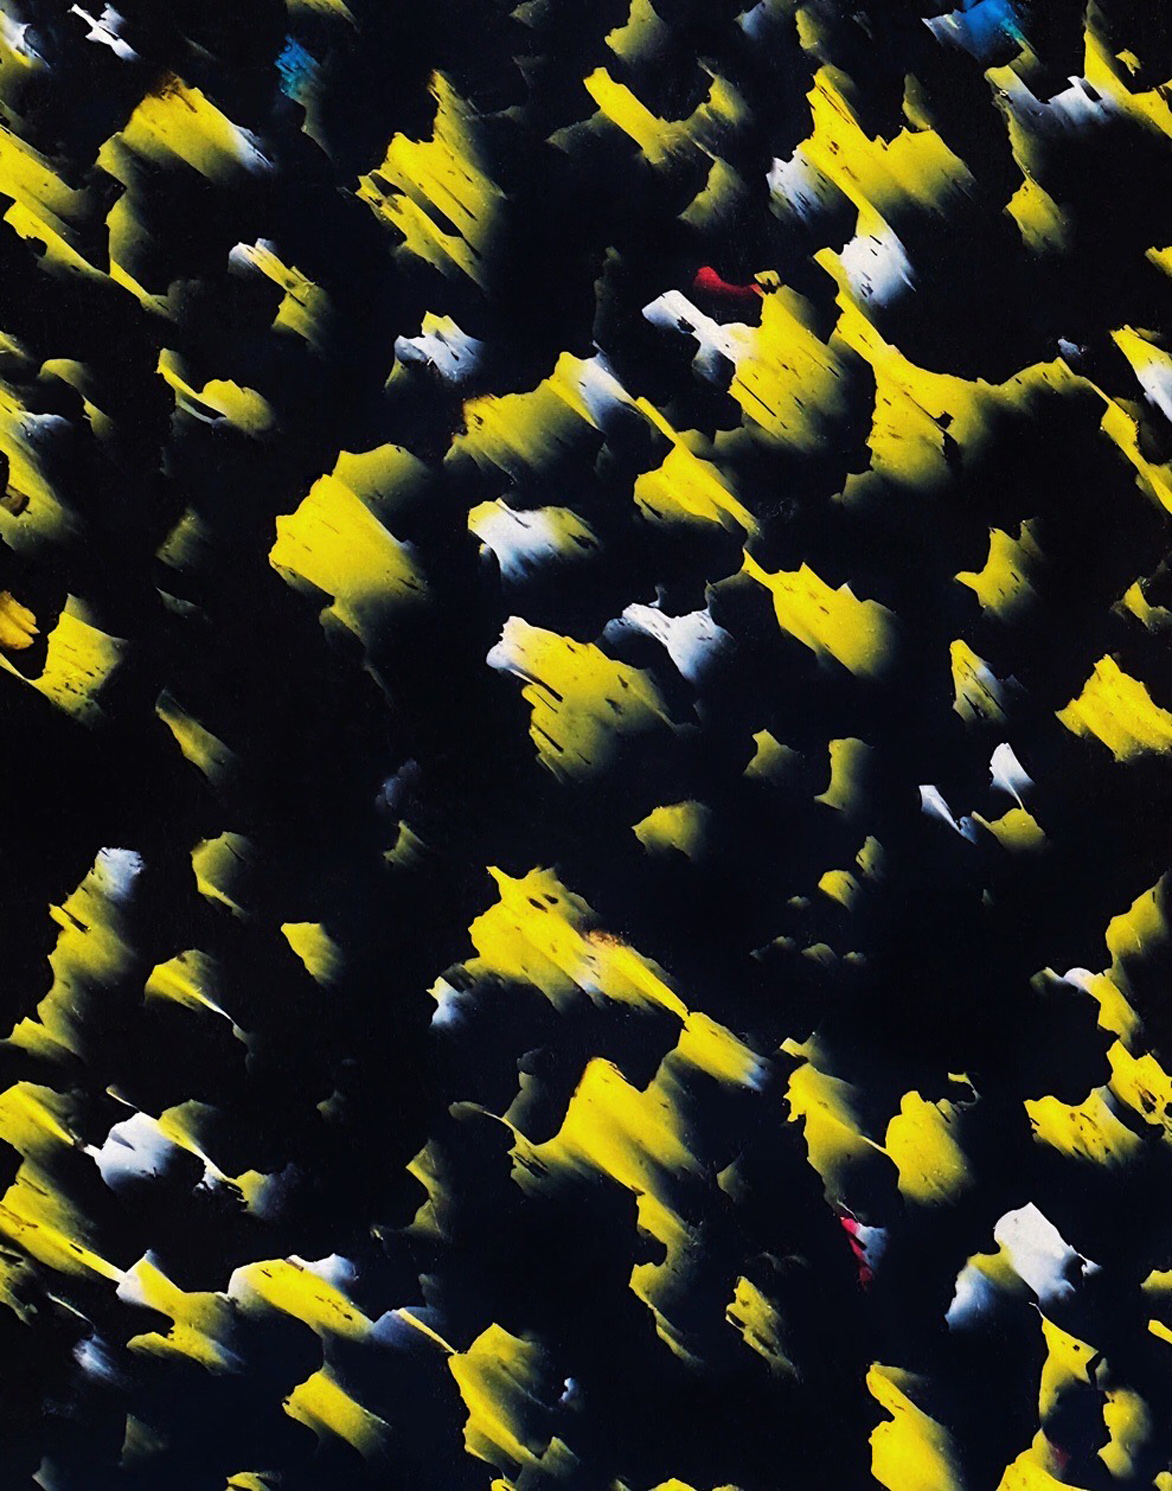 panneau noir avec parties jaunes, quelques endroits blancs, de petites taches rouges ou bleues